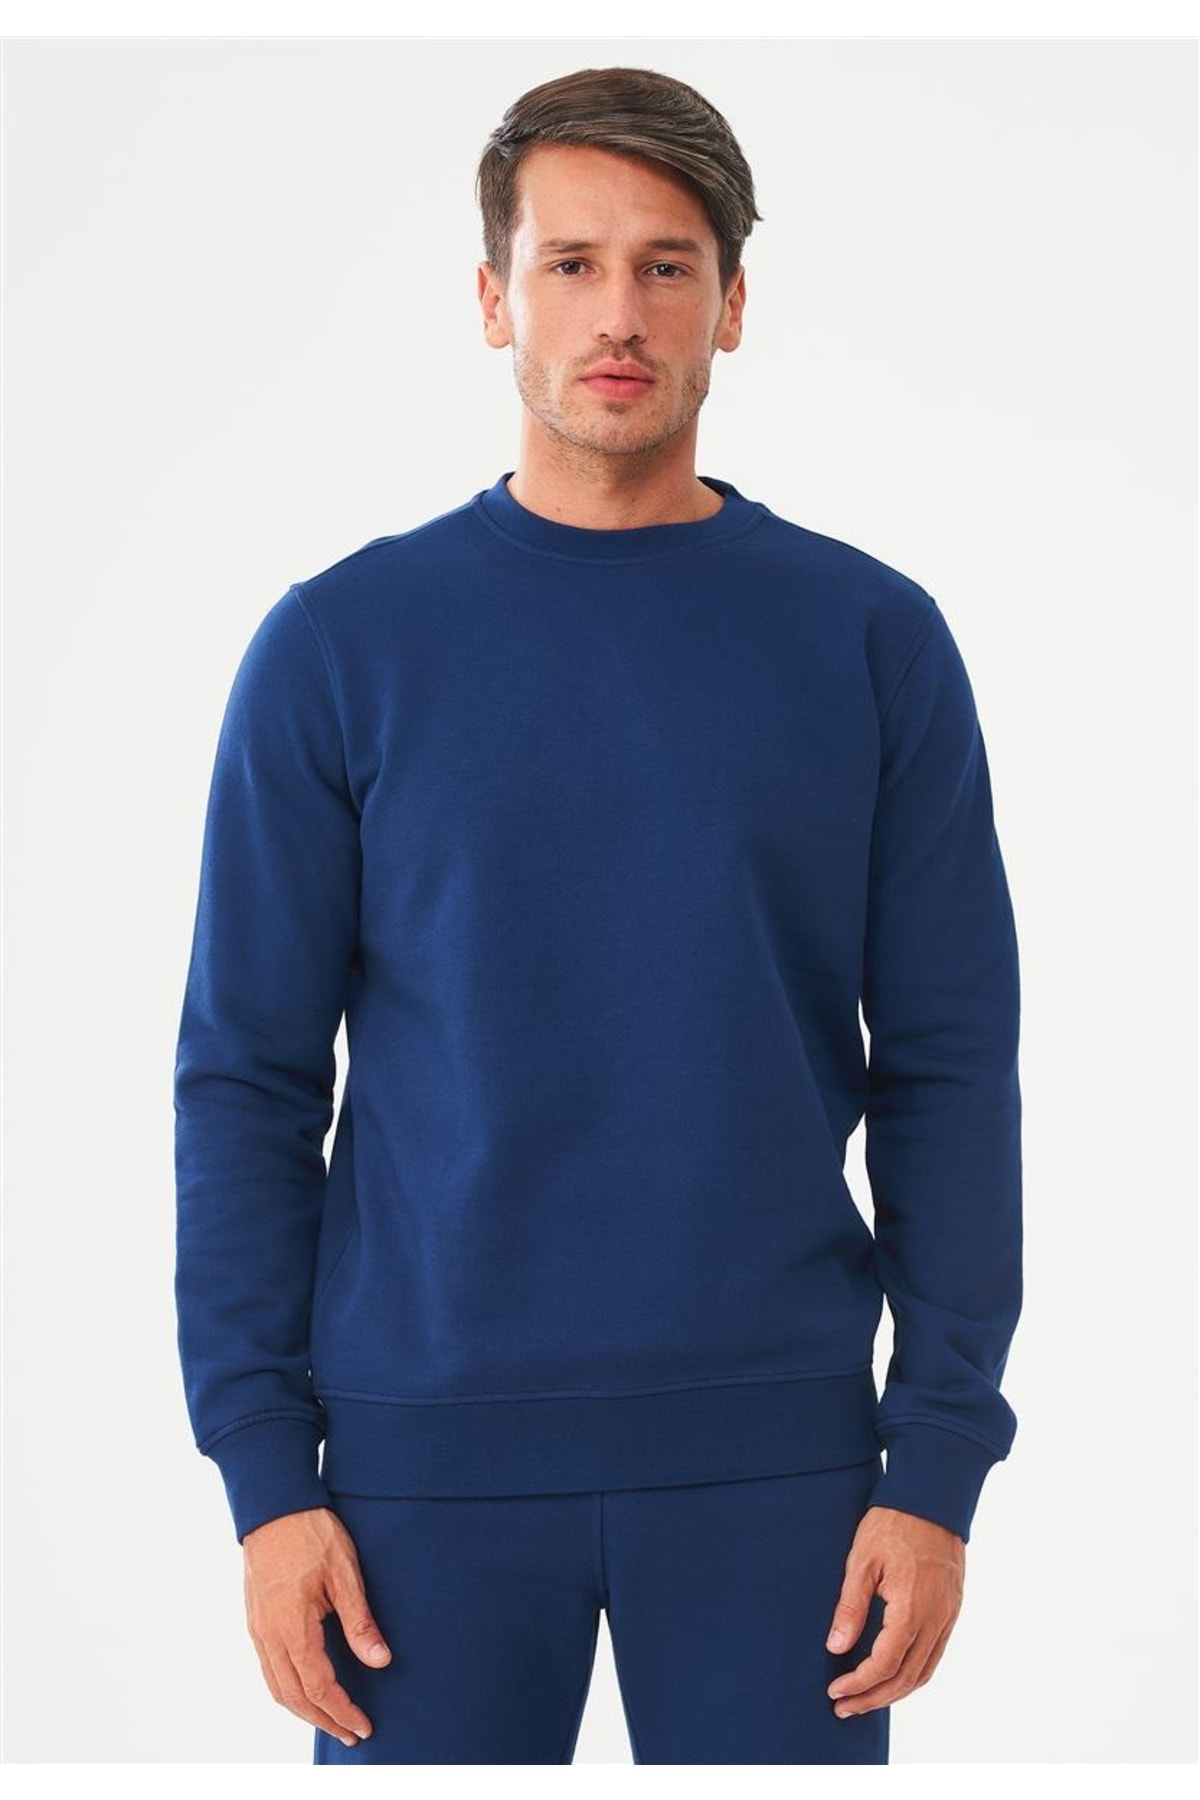 ORGANICATION Sweatshirt Dunkelblau Figurbetont Fast ausverkauft